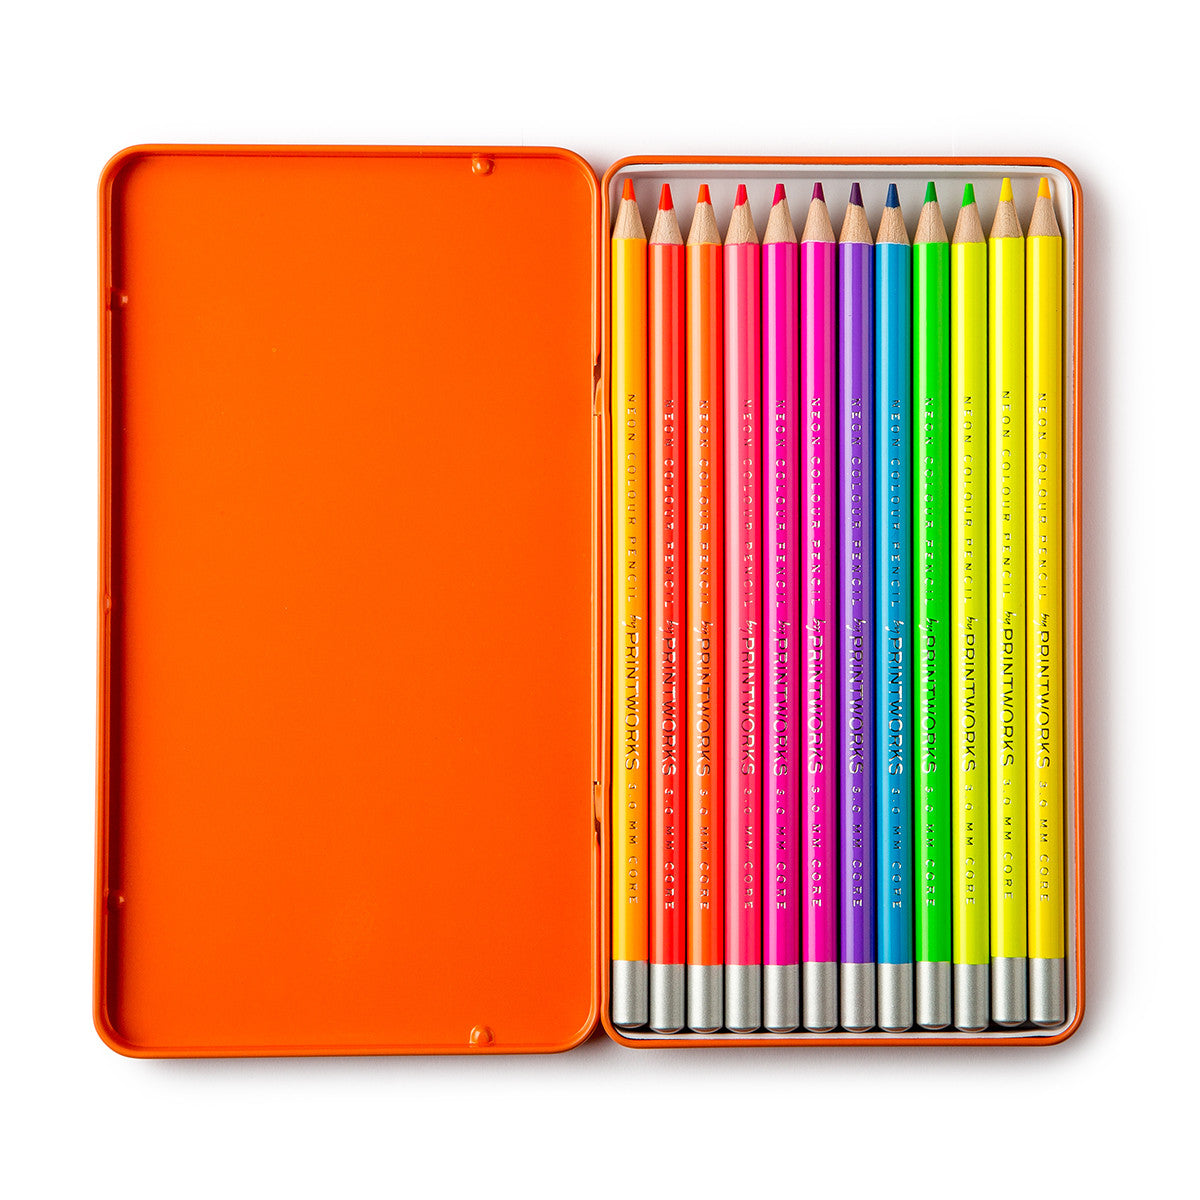 Crayons en bois de tilleul de couleur néon - 12